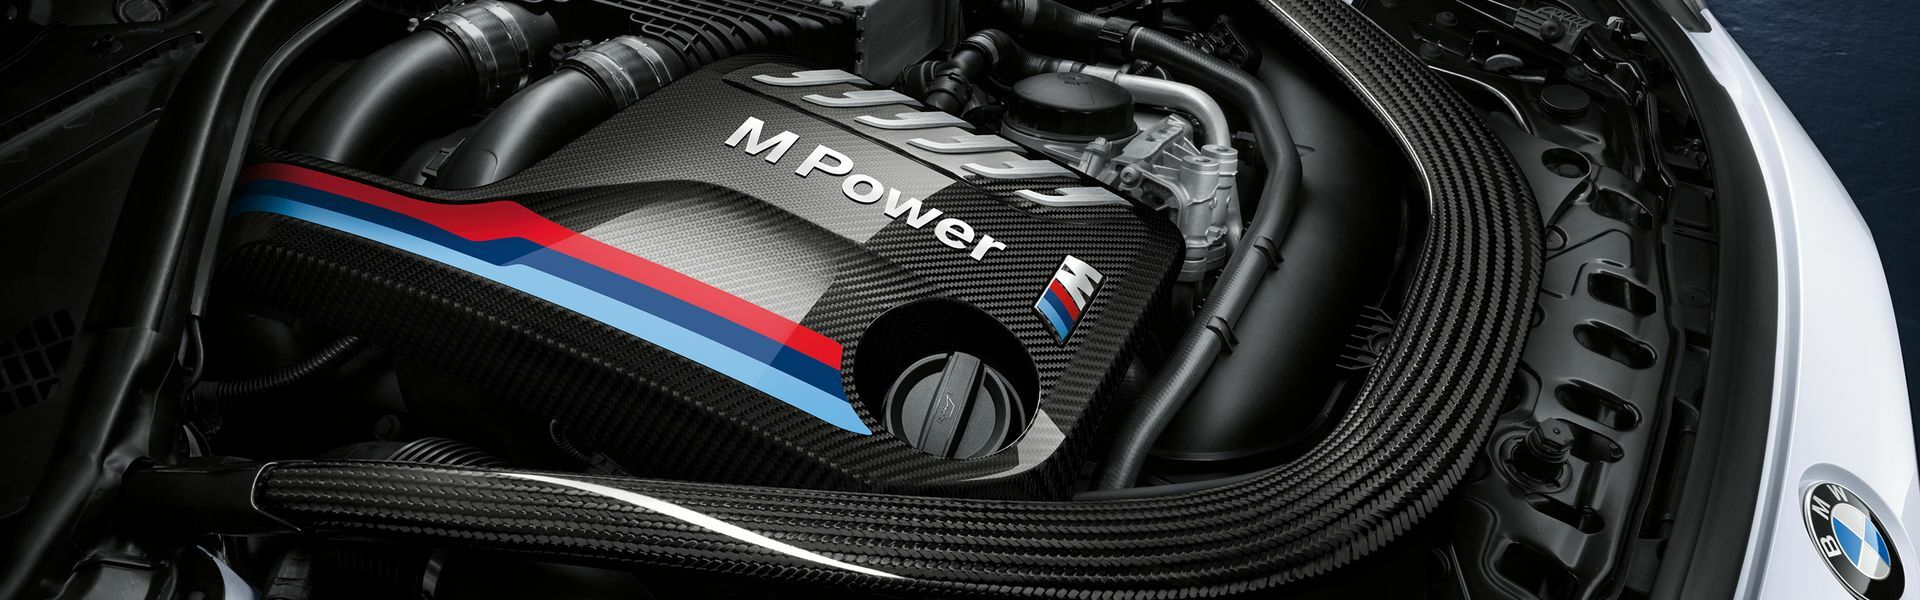 Zvýšení výkonu/ Softwarové úpravy/ Drobné performance díly pro automobil Porsche Boxster GTS 981